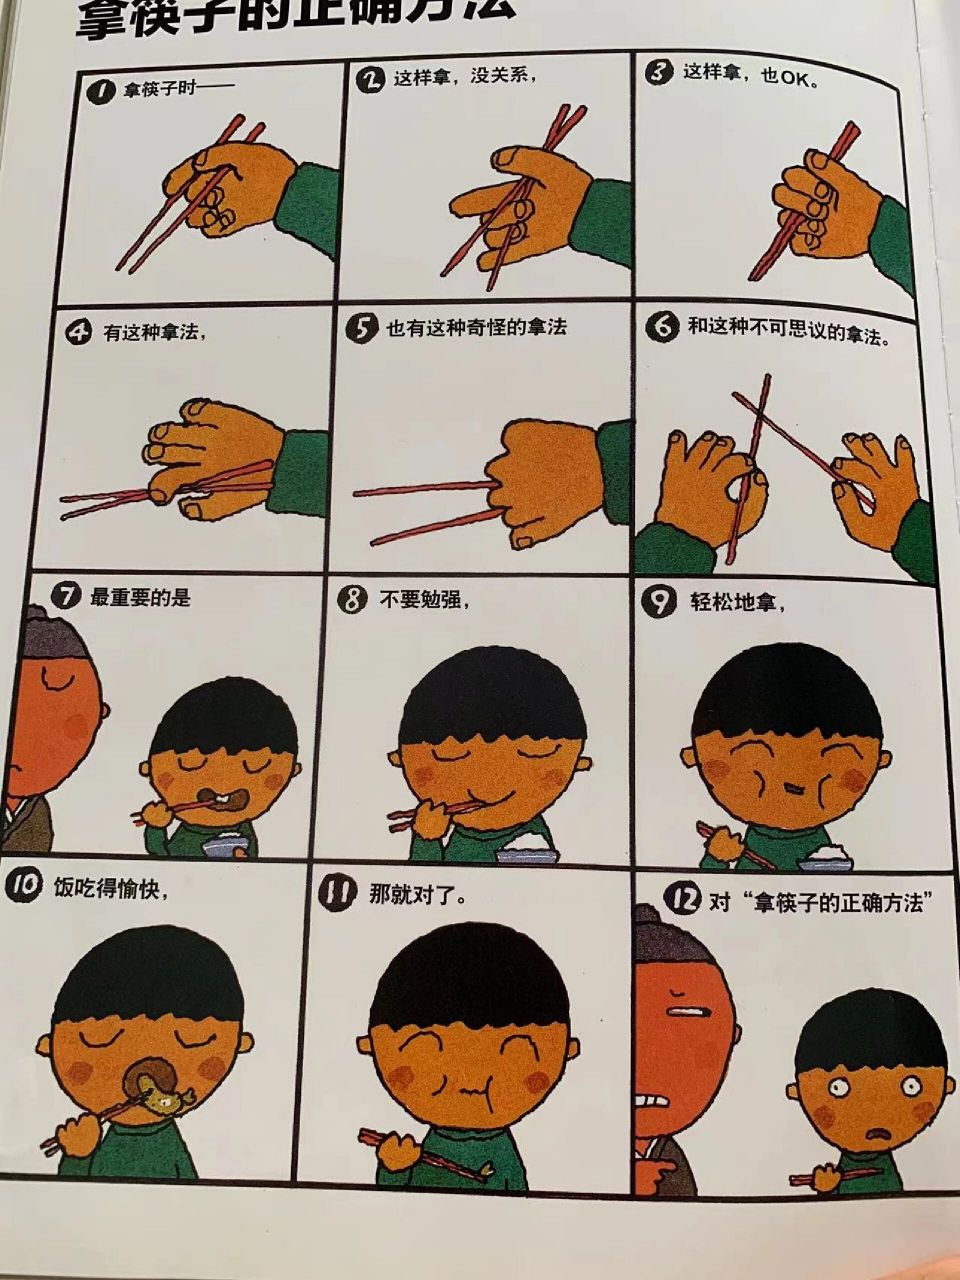 中班要用筷子了,然后我看到这个方法 一直用训练筷,上次家长会老师说